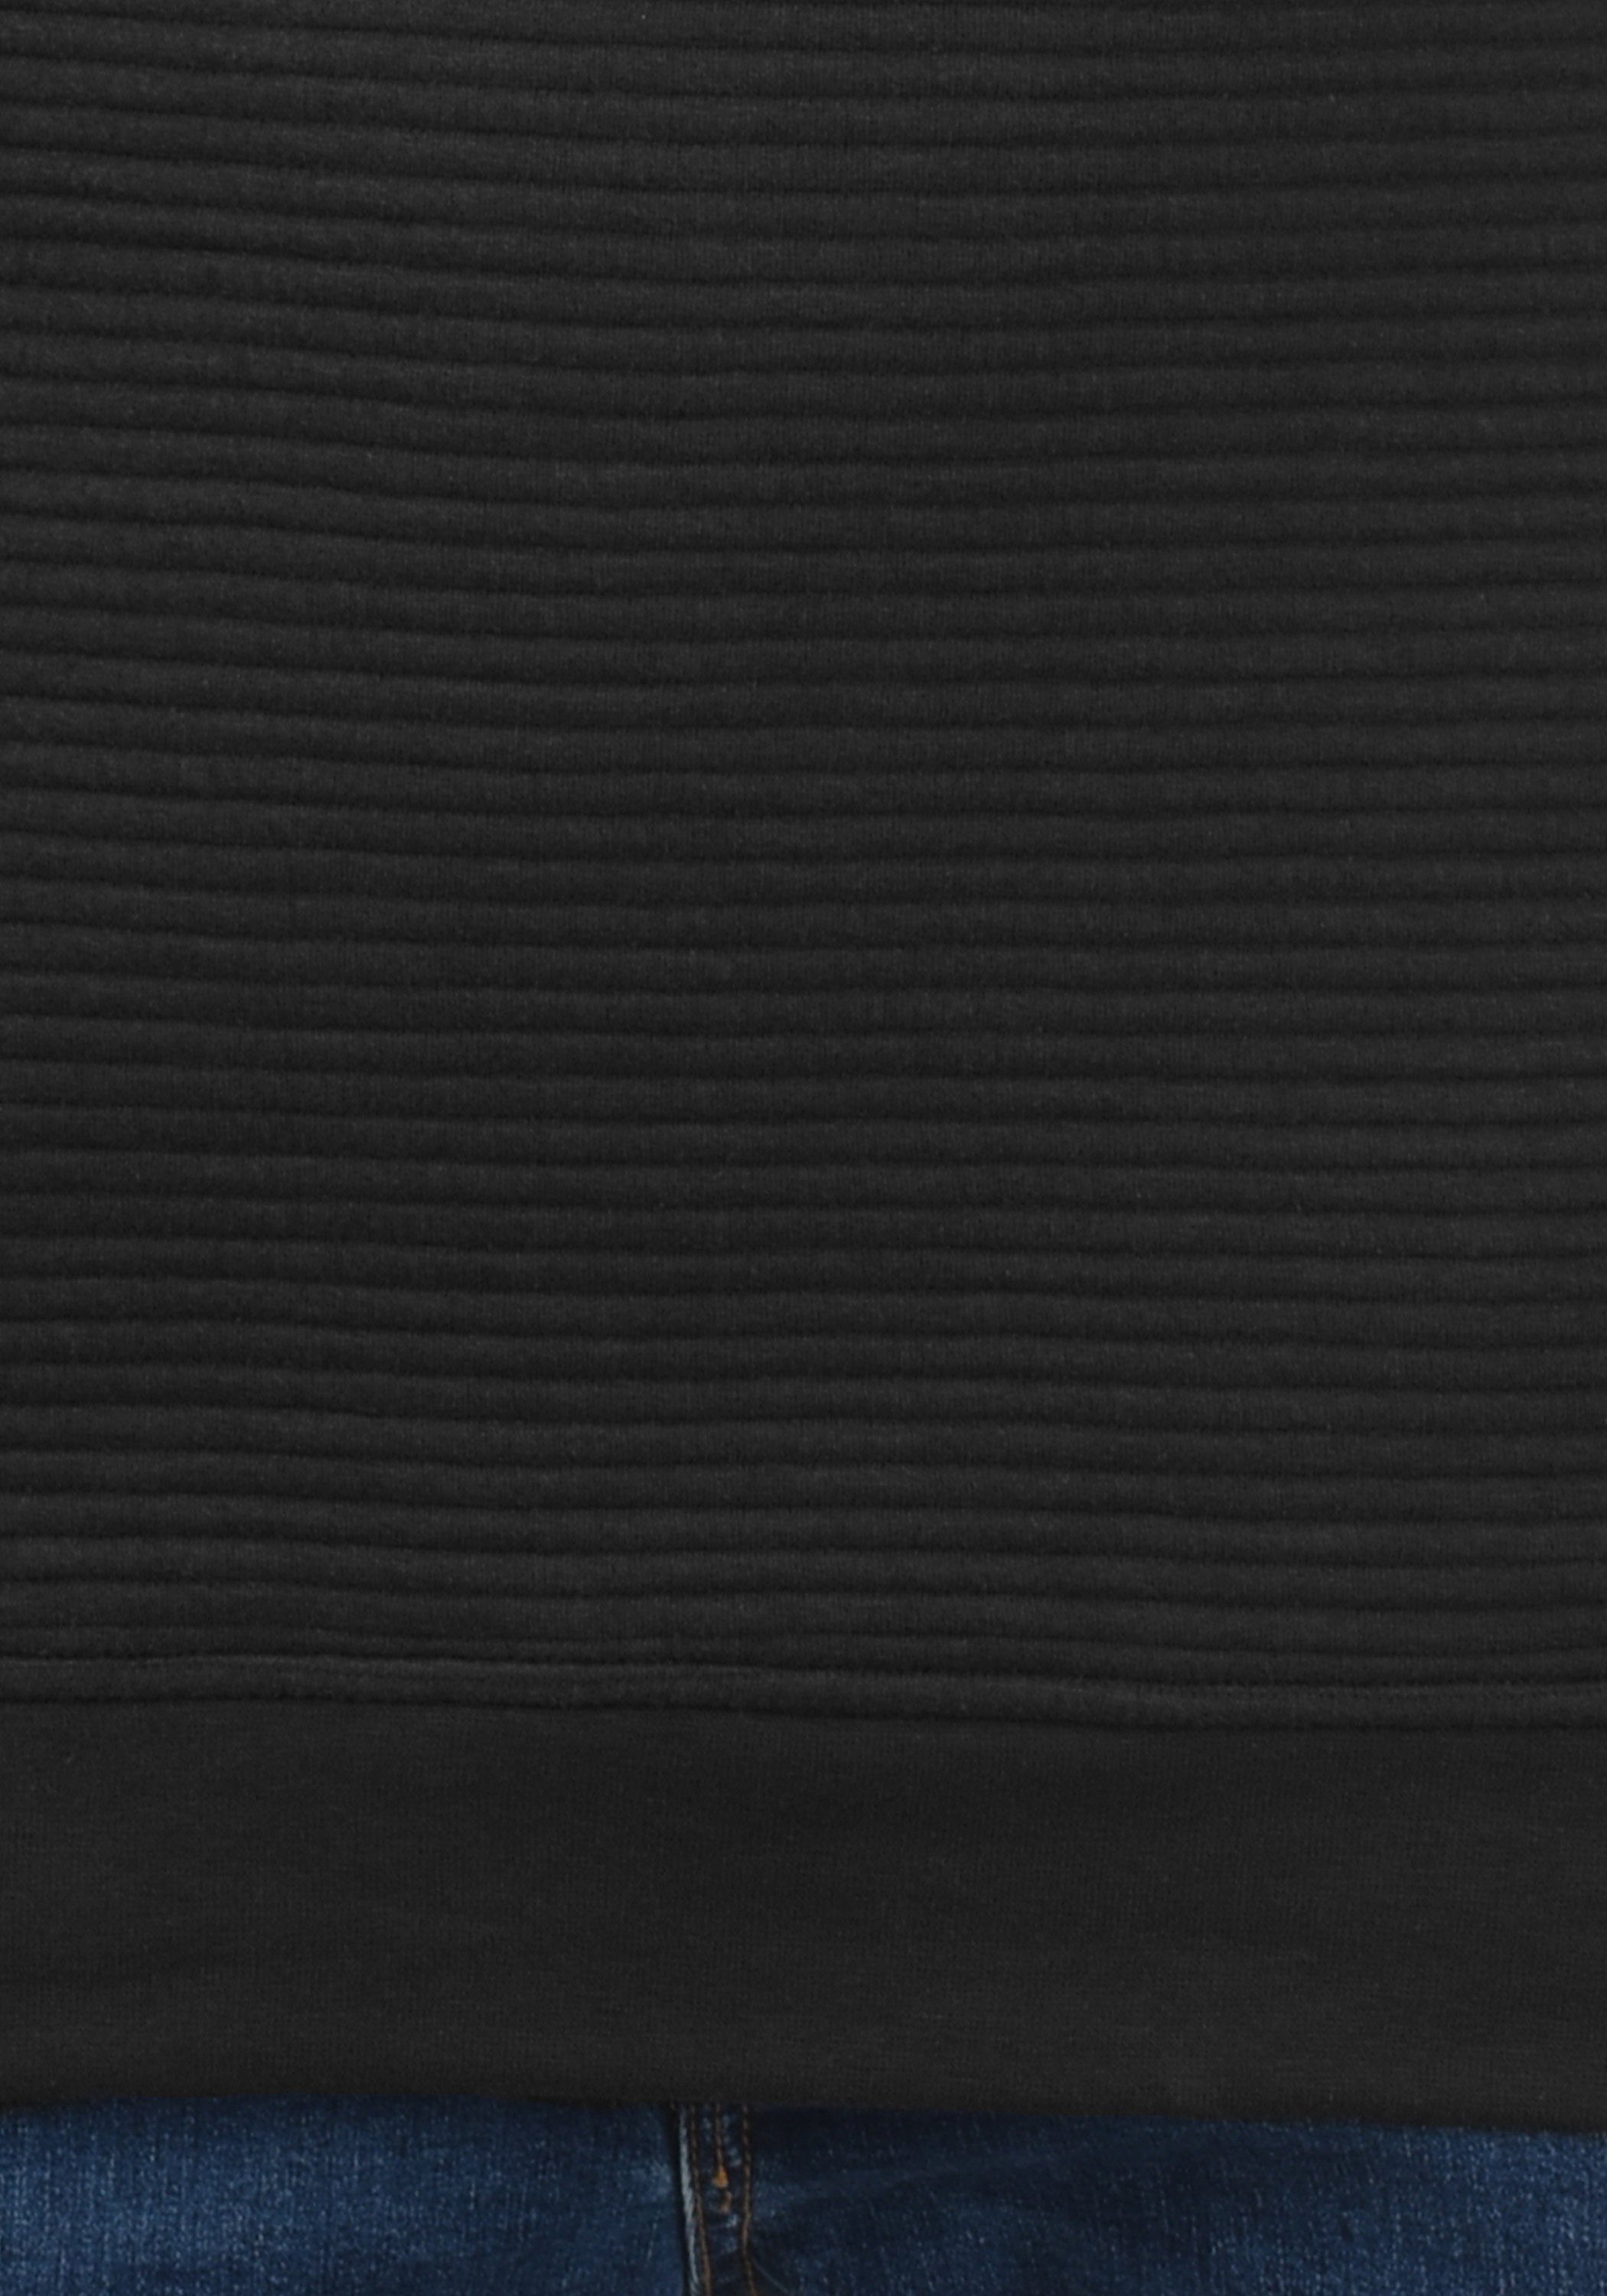 Indicode Sweatshirt IDBronn Sweatpulli Black (999)